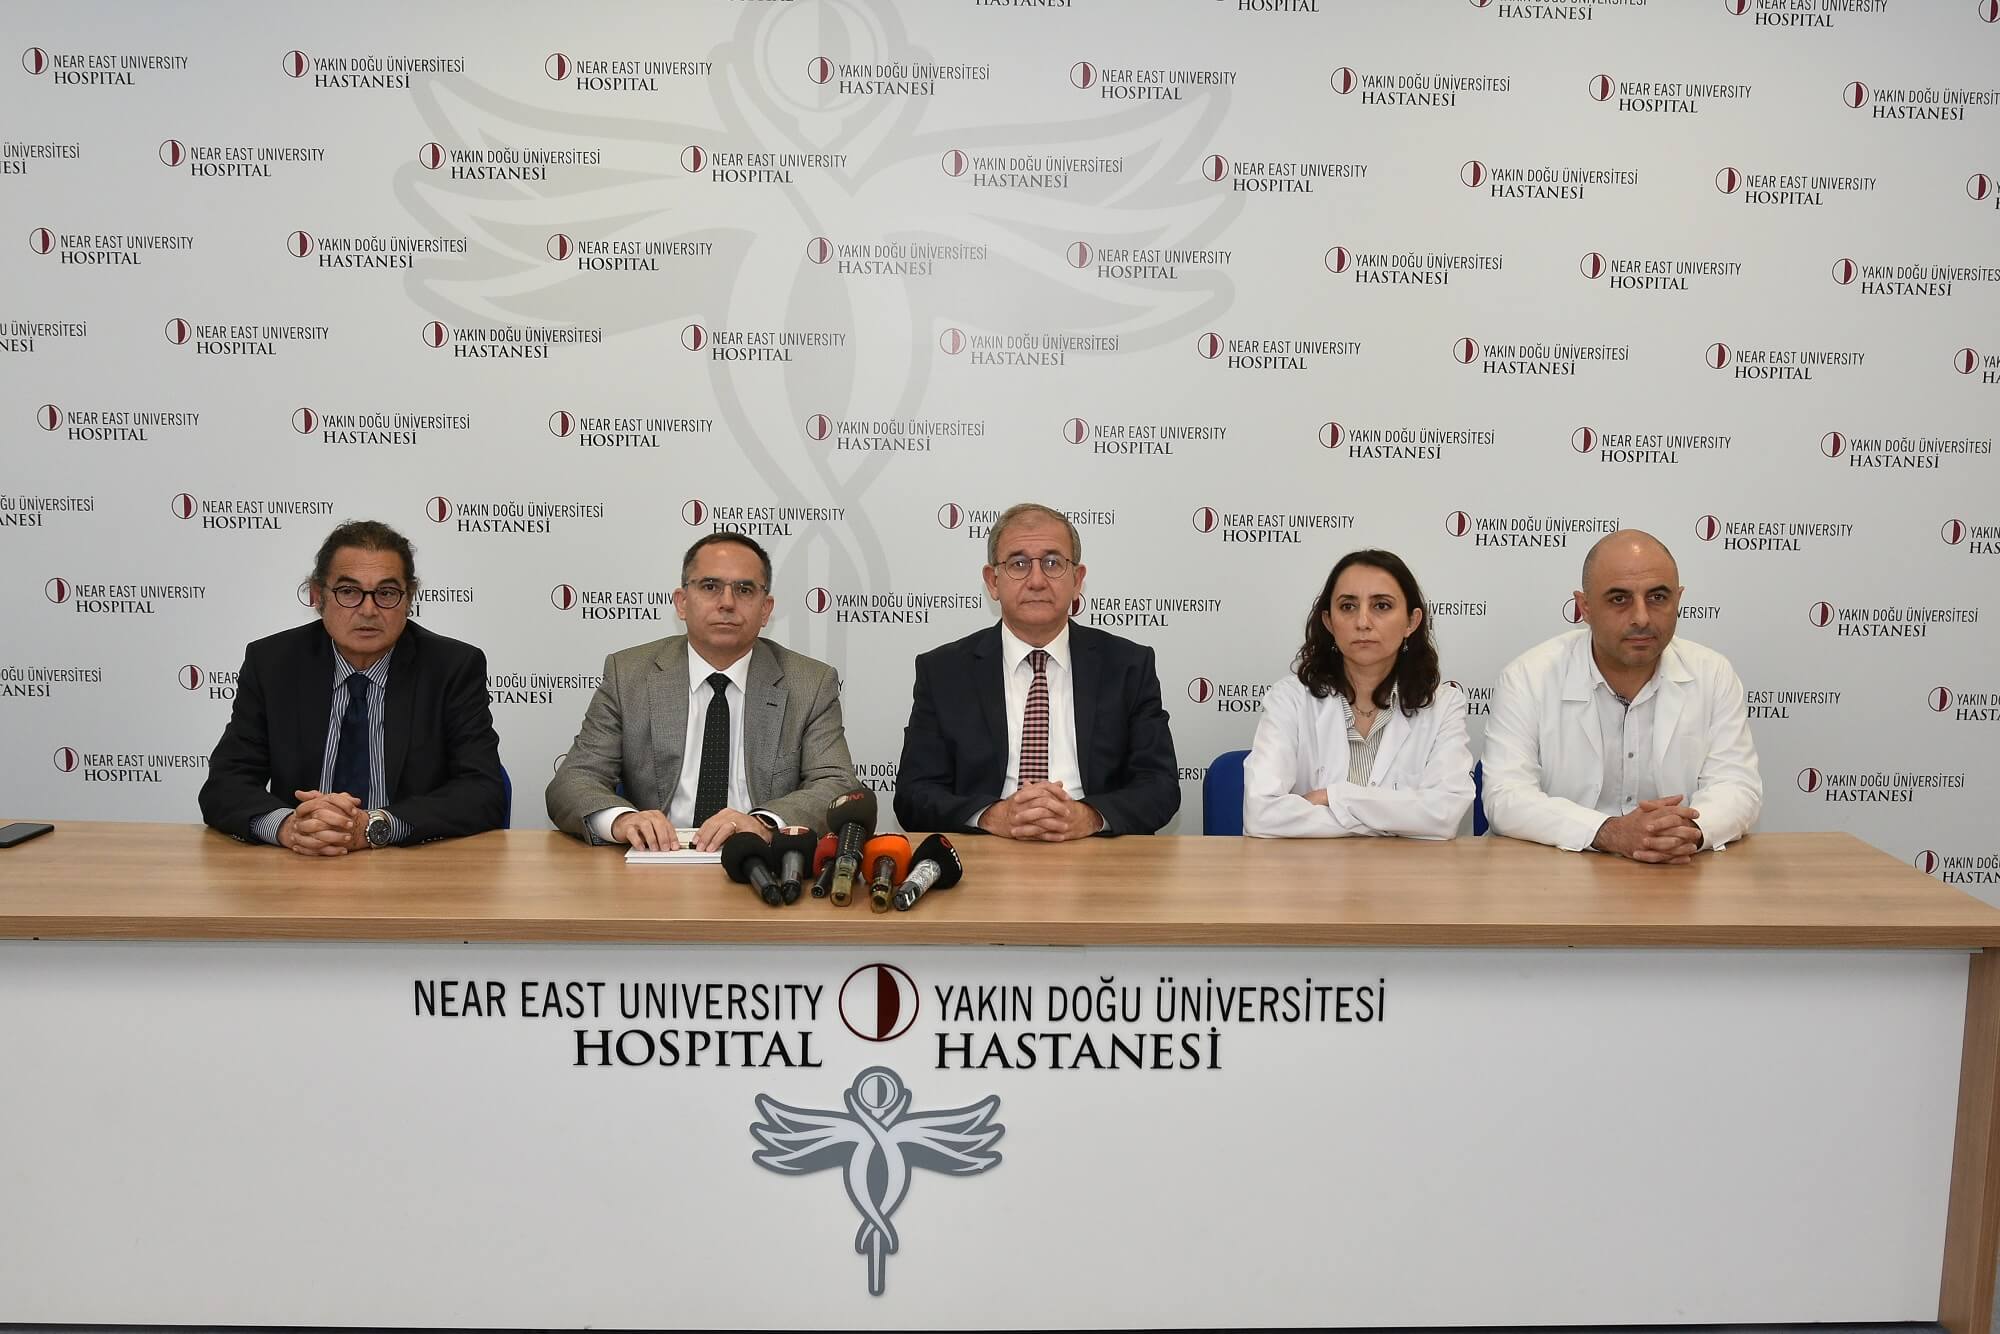 Yakın Doğu Üniversitesi Hastanesi ve Dr. Suat Günsel Girne Üniversitesi Hastanesi’nden Koronavirüse Yönelik Ortak Basın Toplantısı